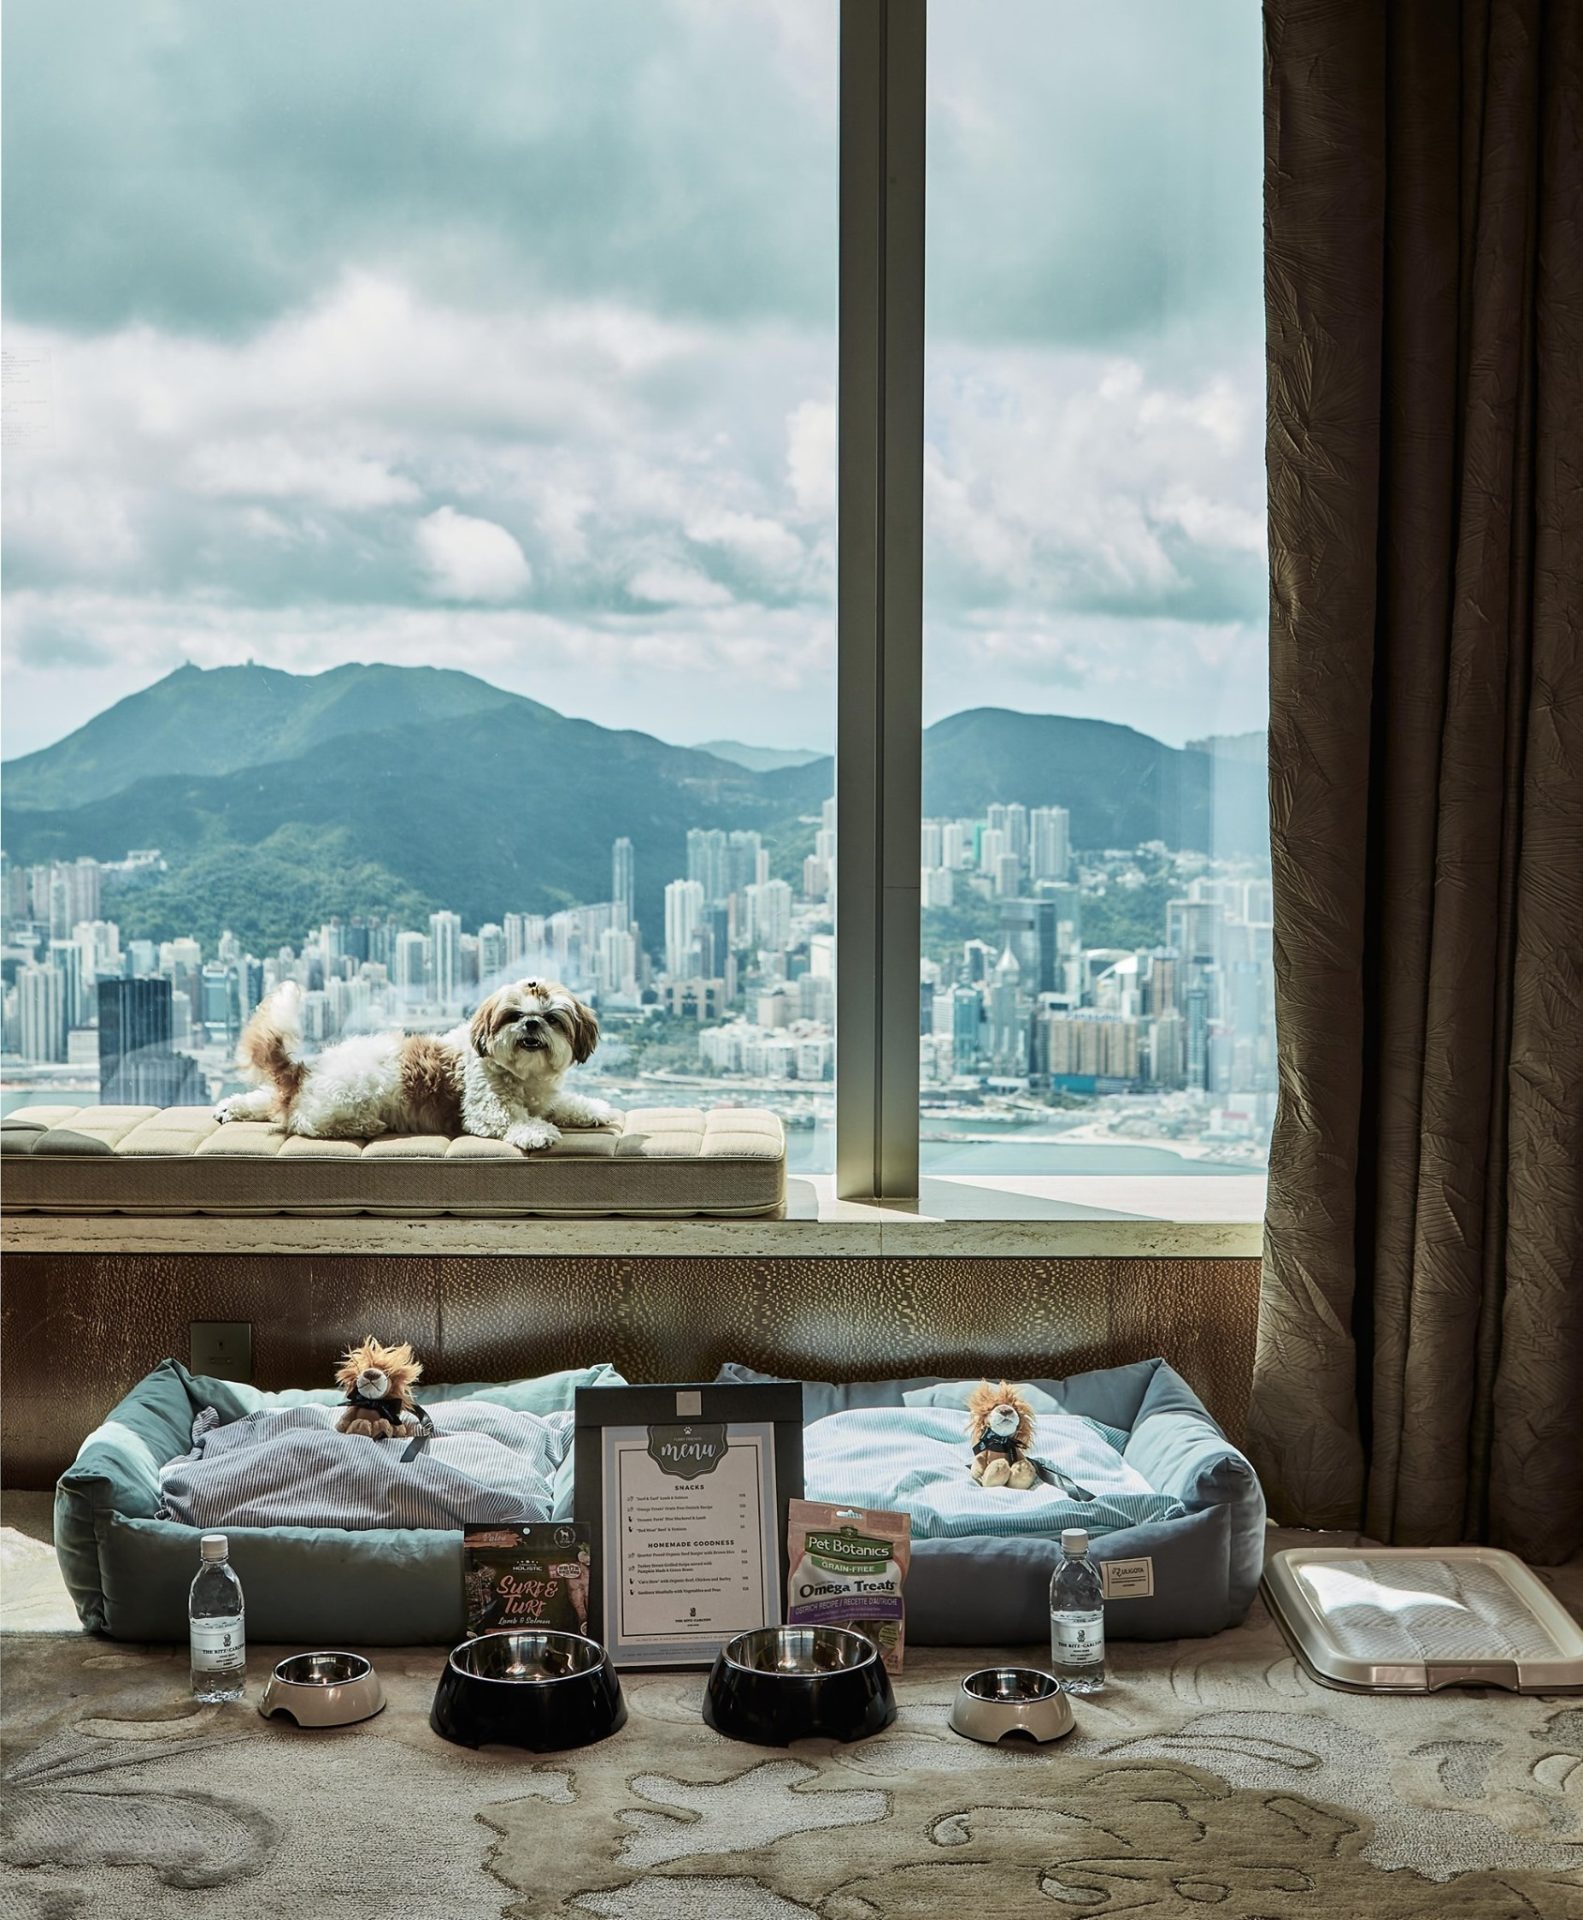 寵物Staycation 寵物酒店 狗酒店 寵物友善酒店
香港麗思卡爾頓酒店（The Ritz-Carlton, Hong Kong）首次推出讓寵物Staycation住宿體驗